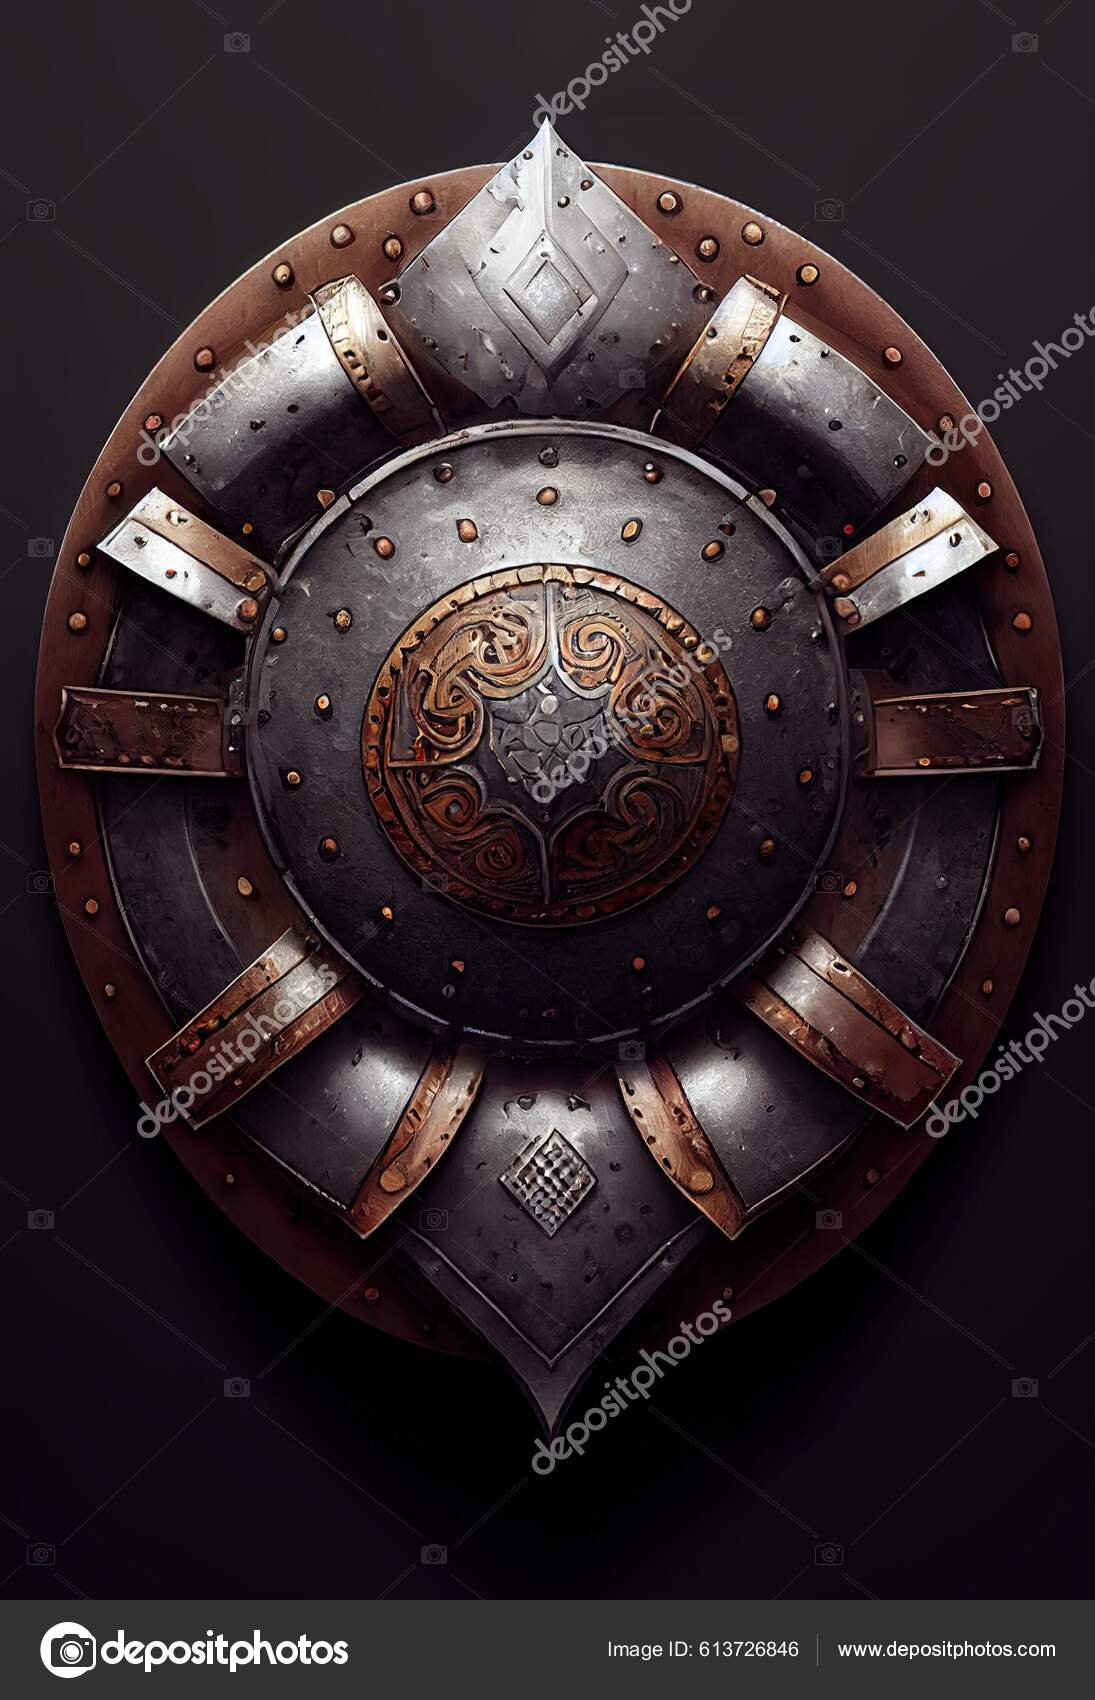 Escudo Vikingo circular plateado de 60 cm